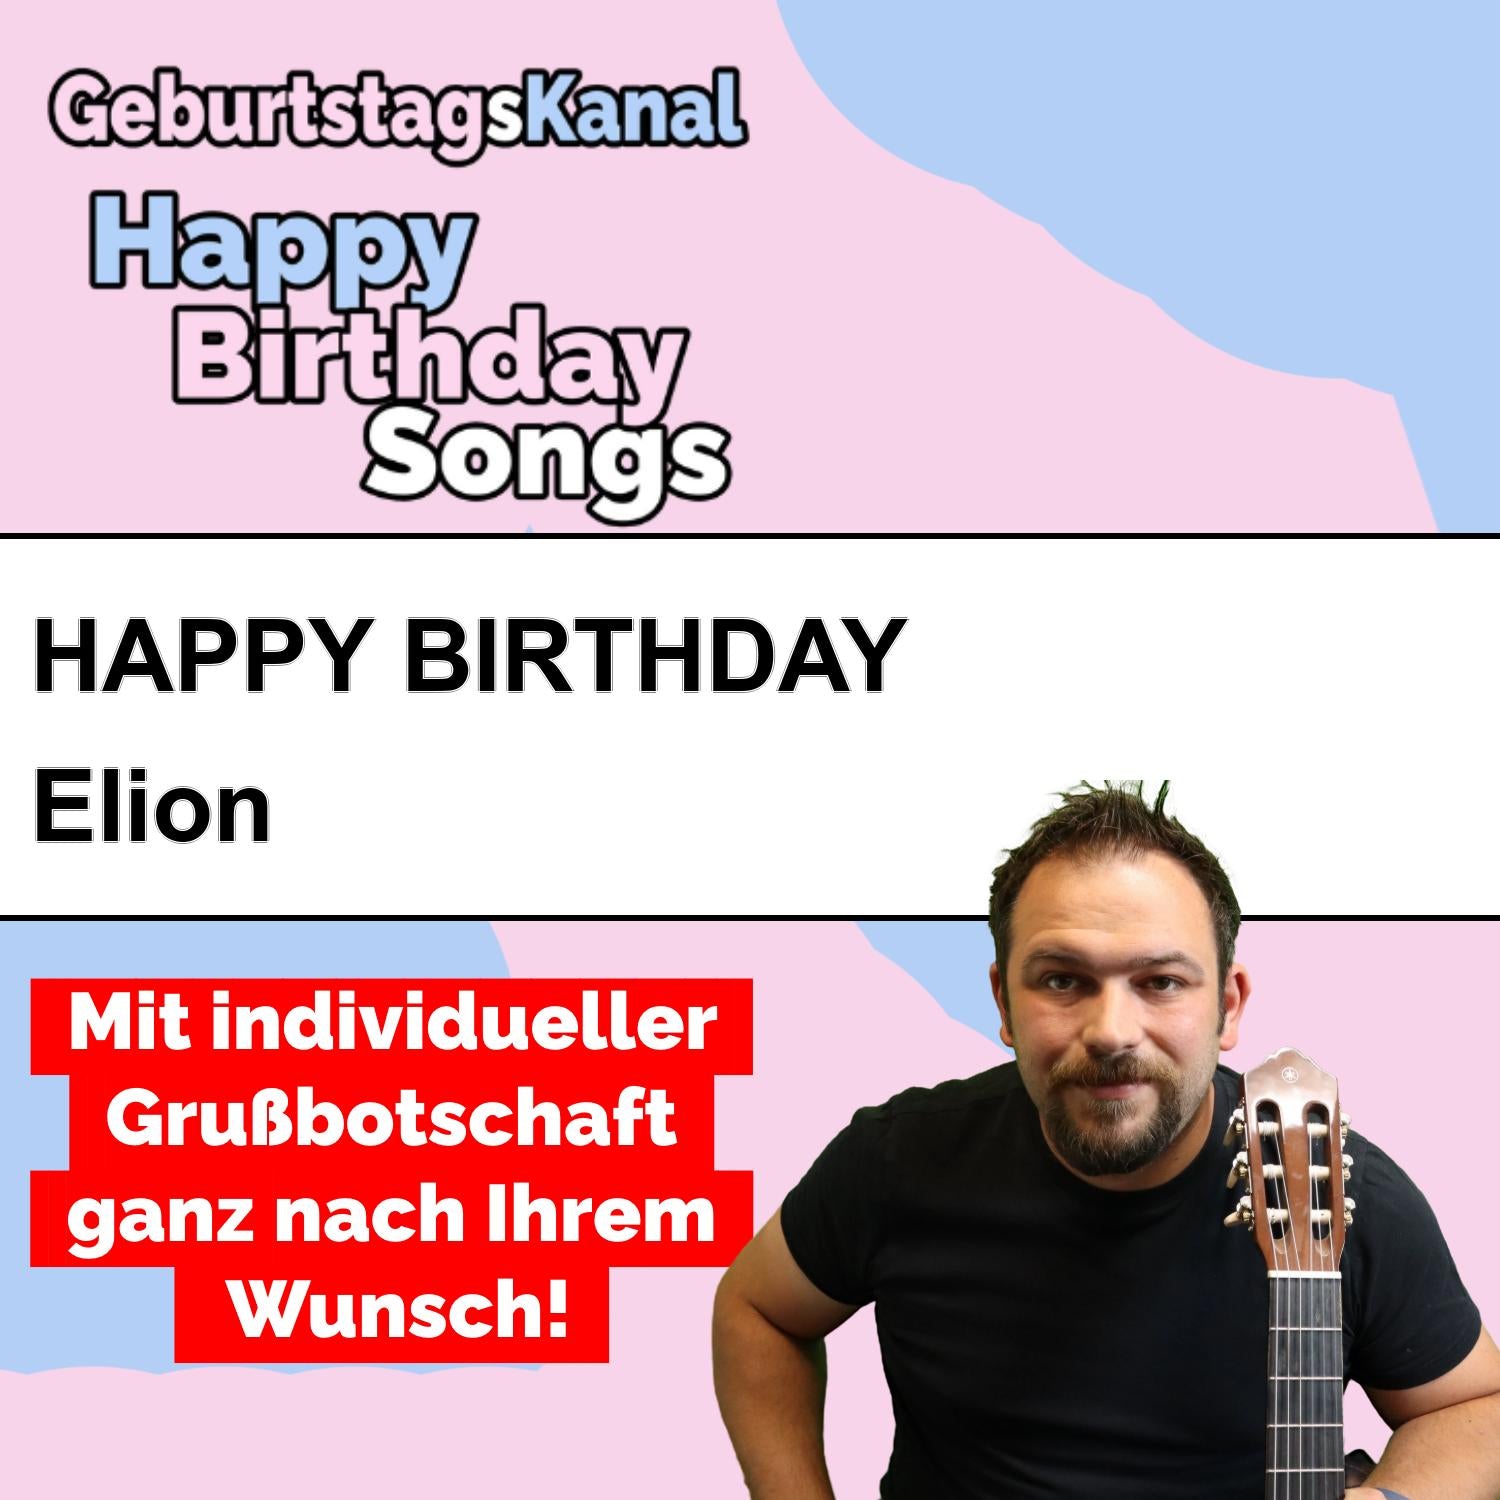 Produktbild Happy Birthday to you Elion mit Wunschgrußbotschaft